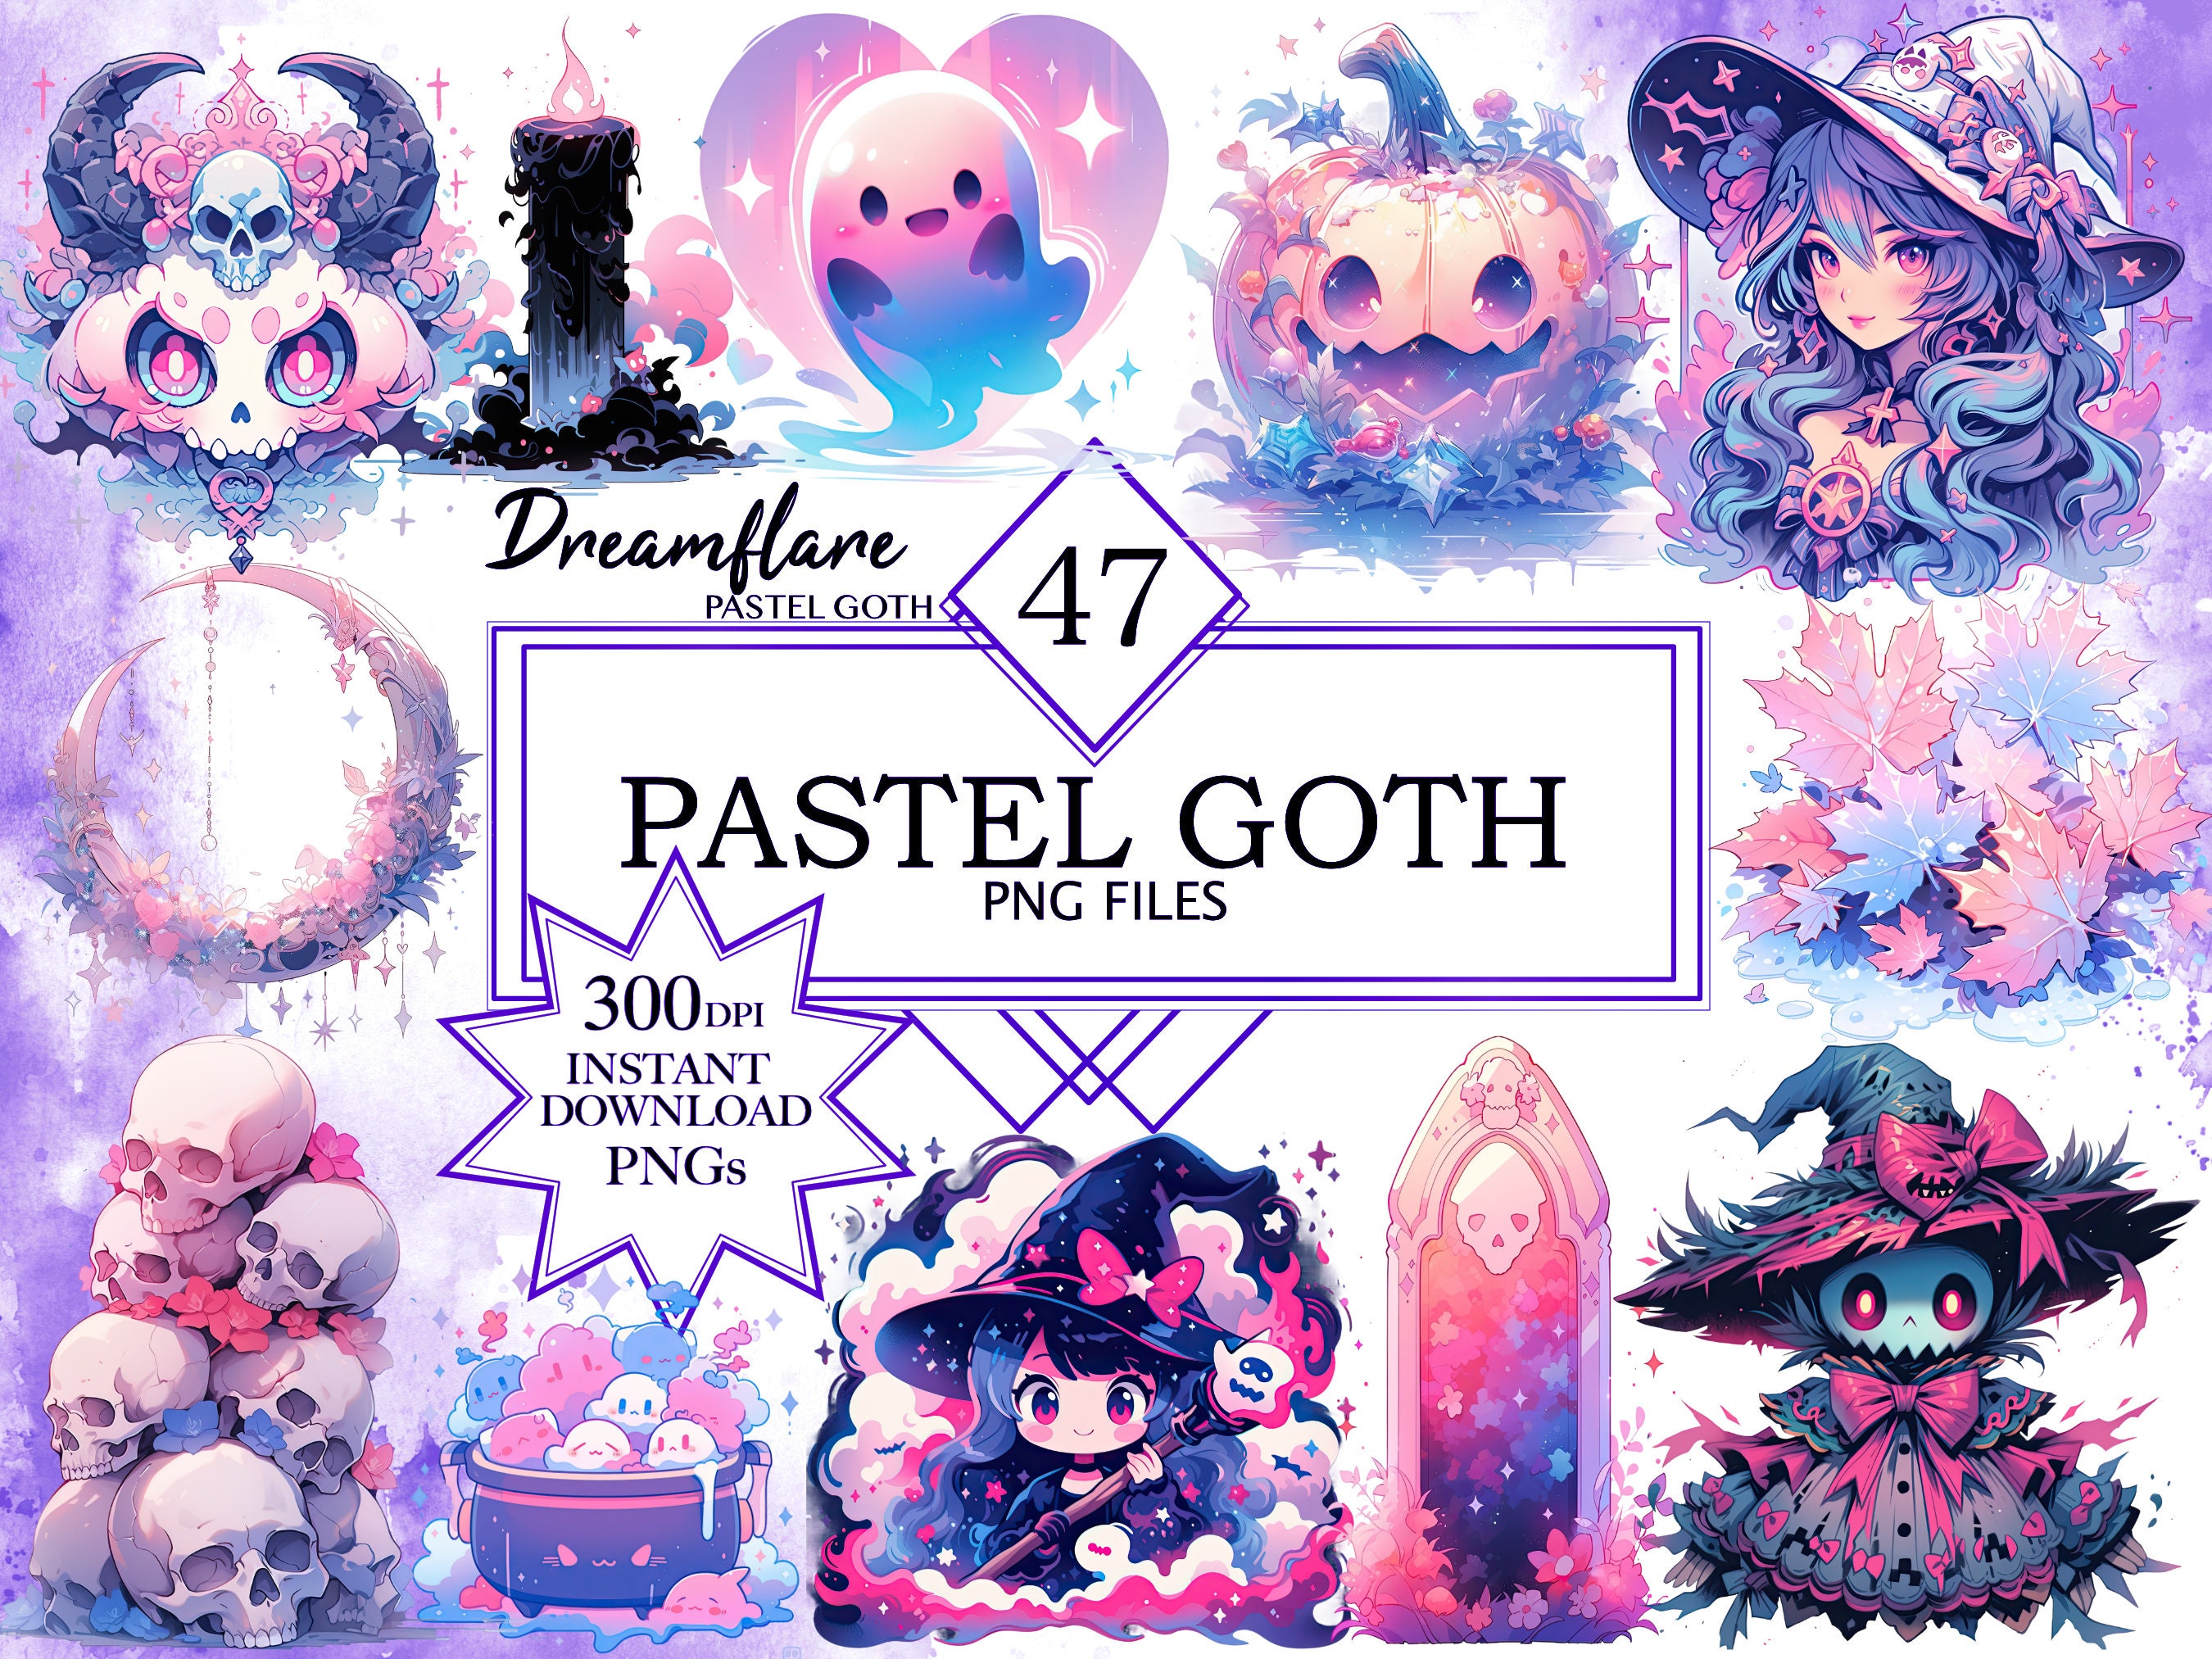 cm) Pastel goth girl by AliKokoro on DeviantArt